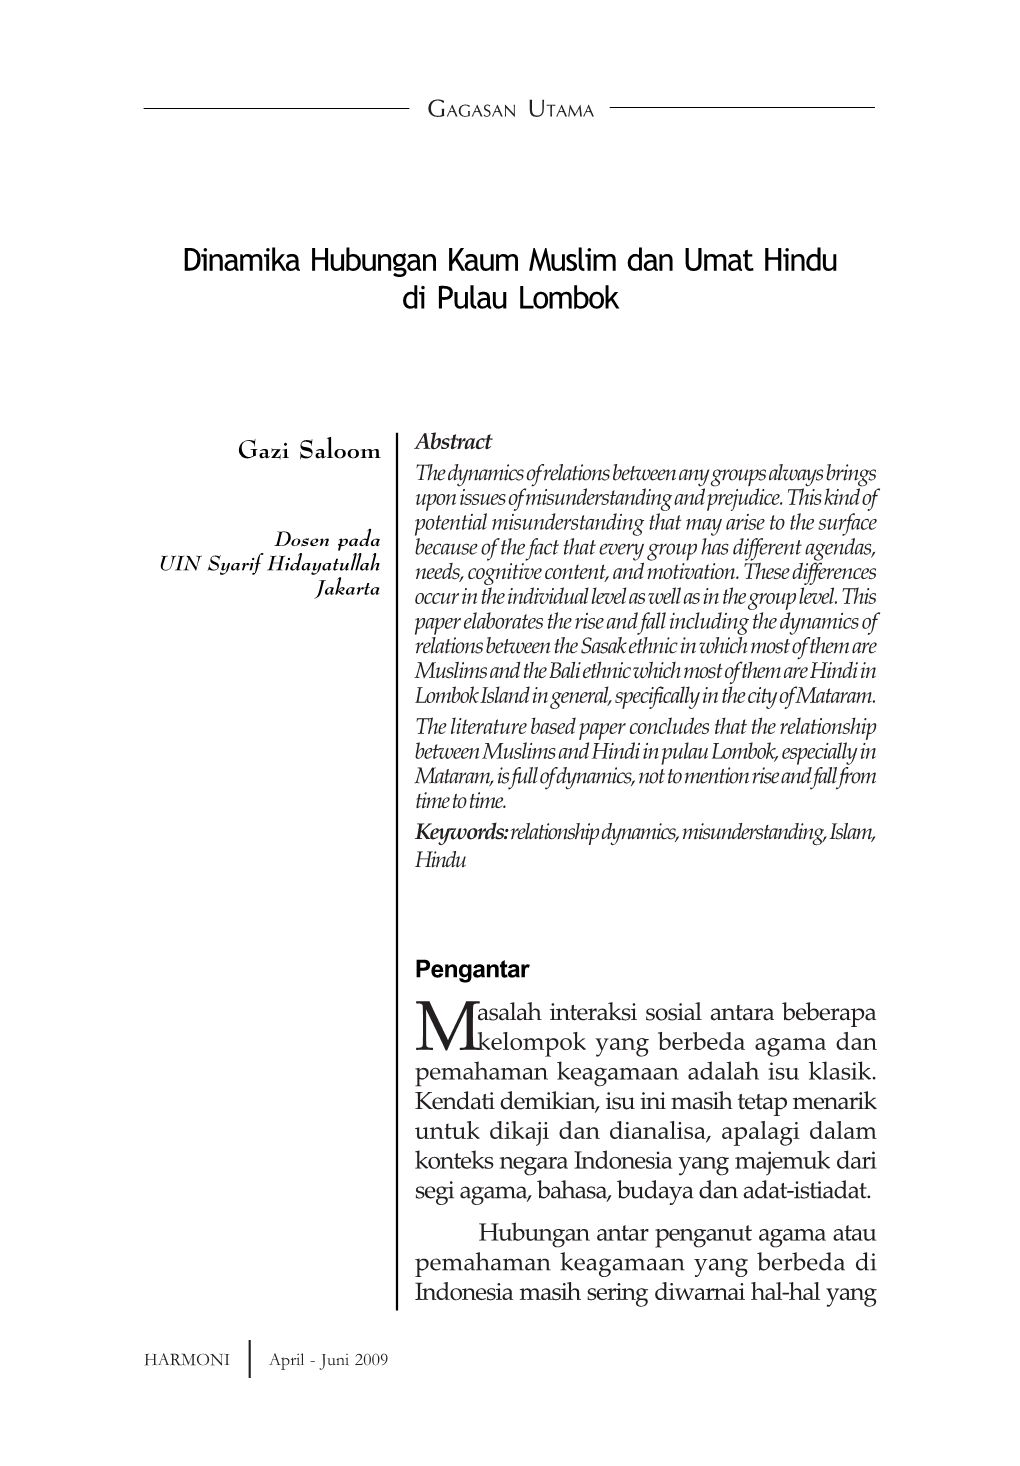 Dinamika Hubungan Kaum Muslim Dan Umat Hindu Di Pulau Lombok